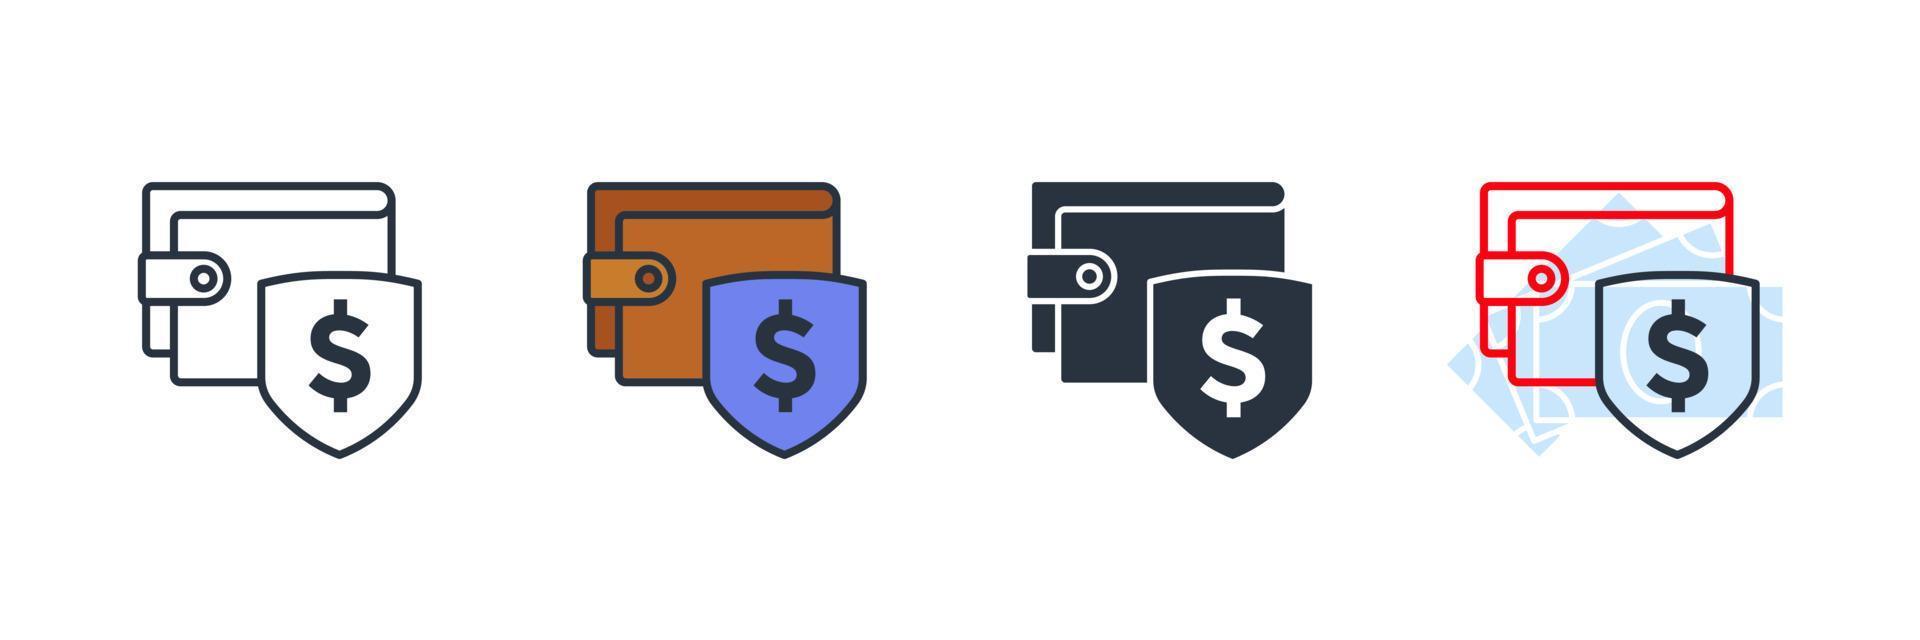 illustrazione vettoriale del logo dell'icona del portafoglio di protezione. modello di simbolo di pagamenti di sicurezza per la raccolta di grafica e web design